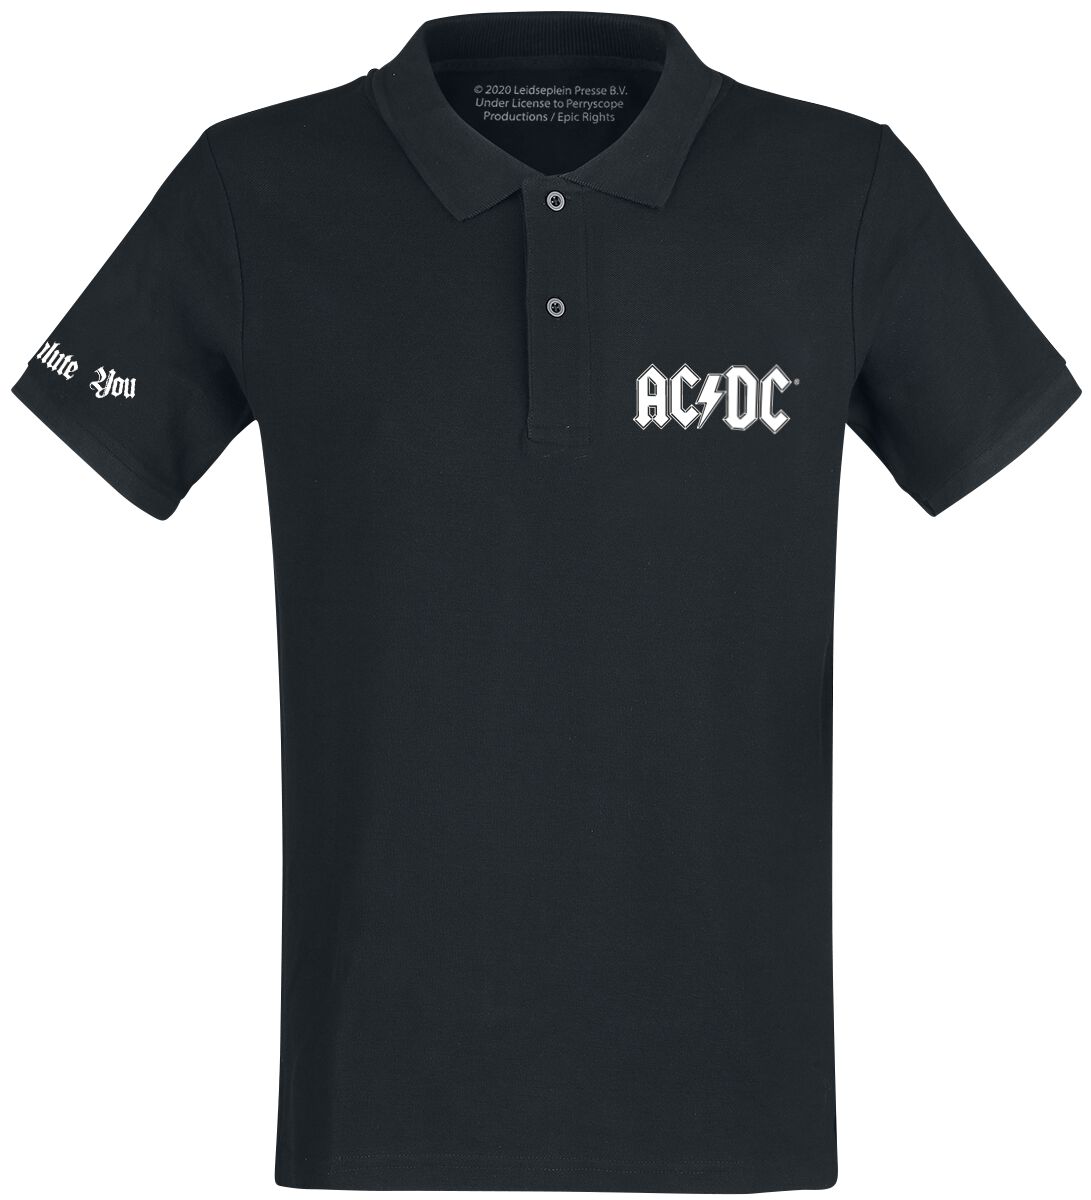 AC/DC We Salute You Poloshirt schwarz in M